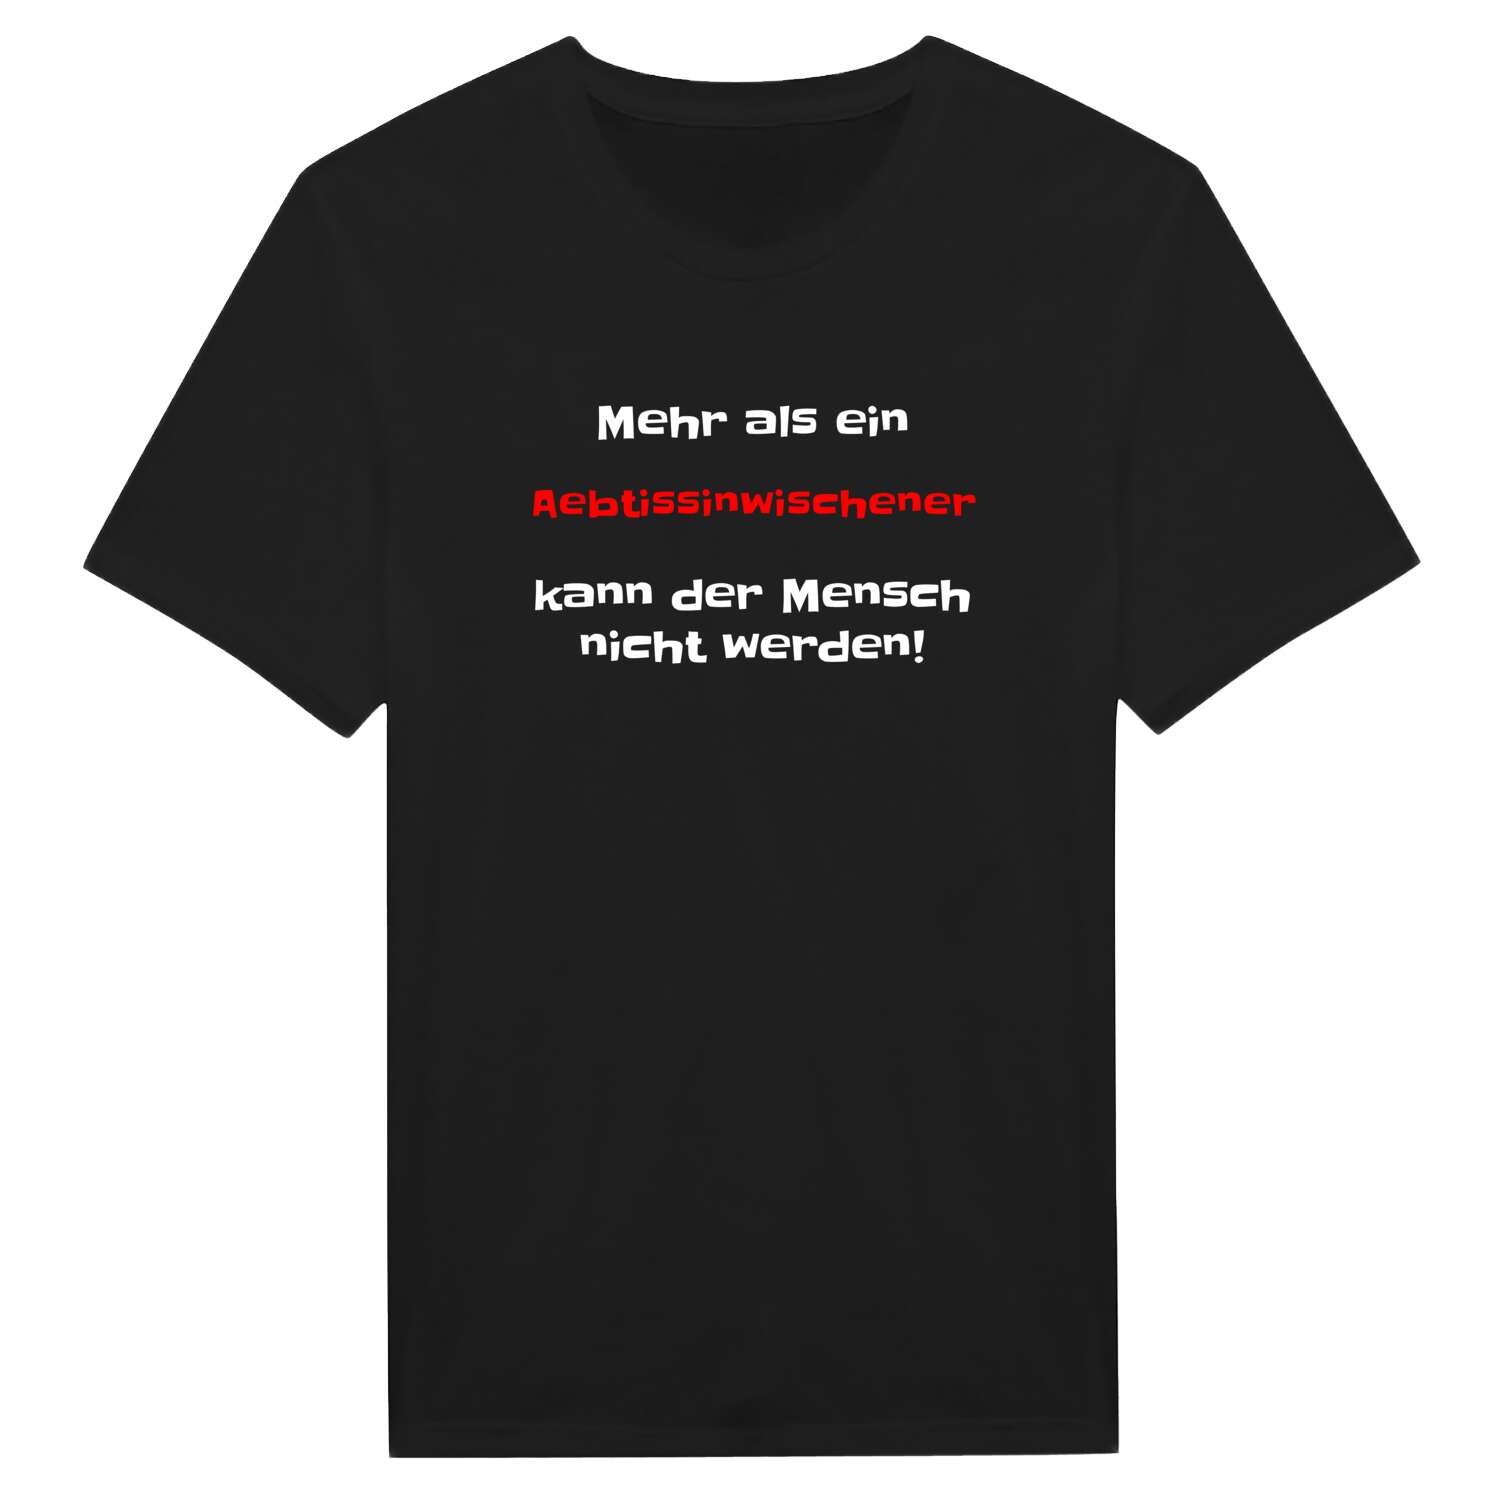 Aebtissinwisch T-Shirt »Mehr als ein«